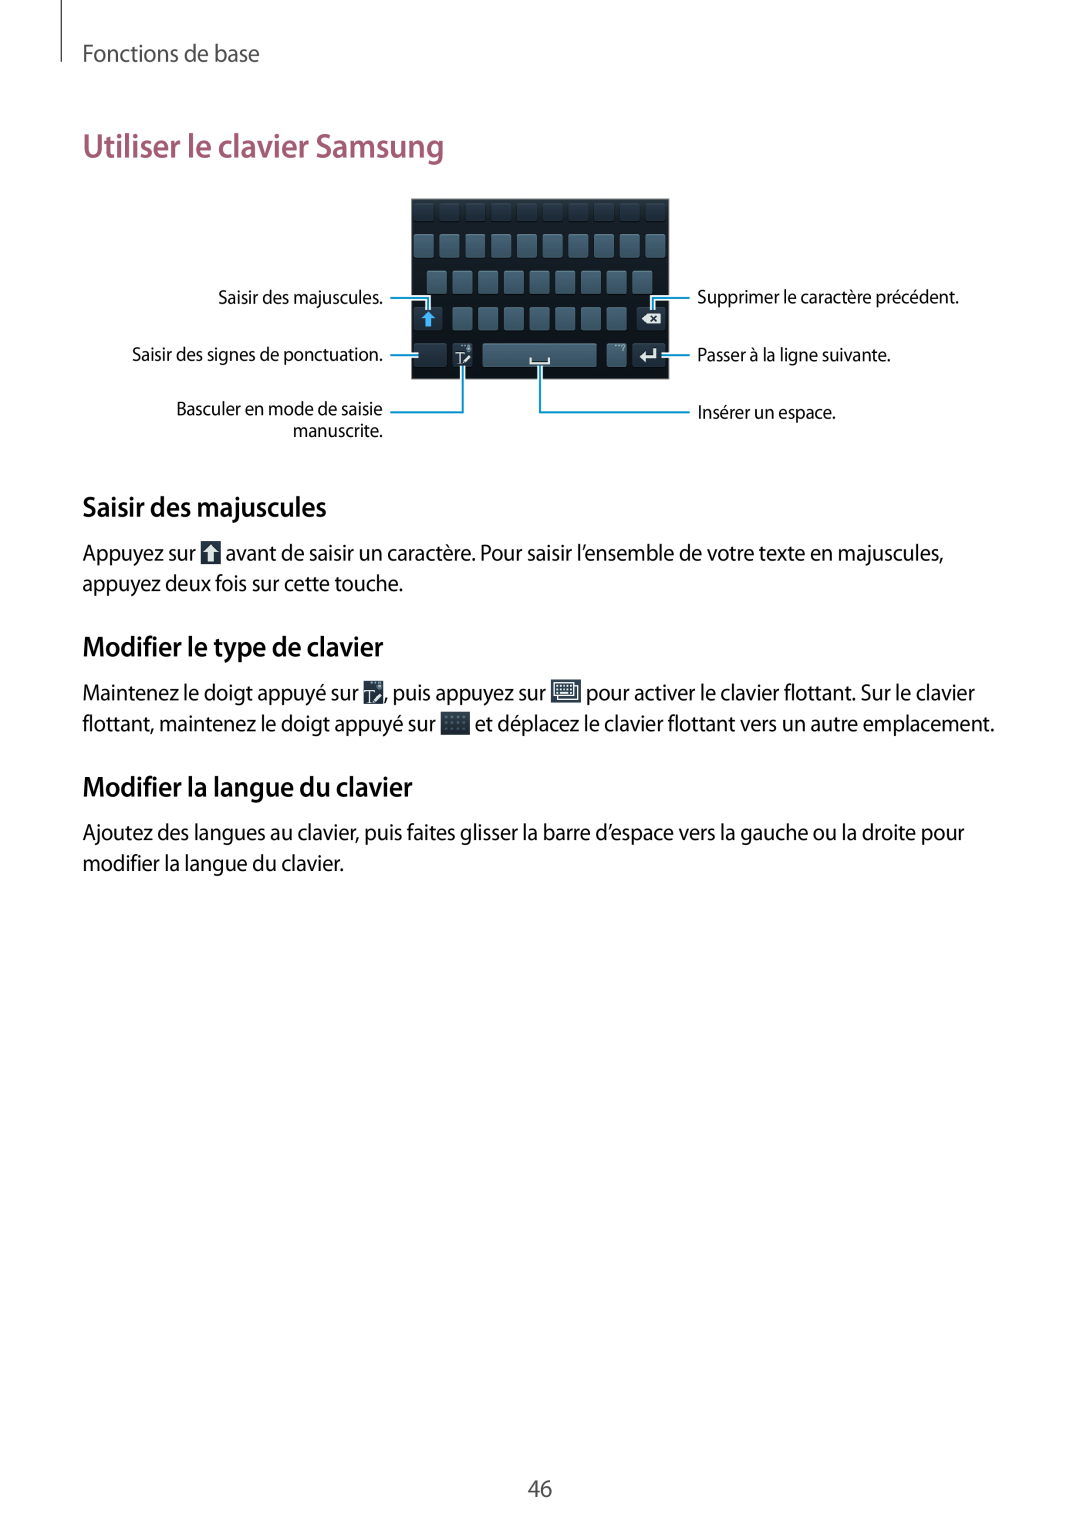 Samsung GT-N7105RWDBOG Utiliser le clavier Samsung, Saisir des majuscules, Modifier le type de clavier, Fonctions de base 